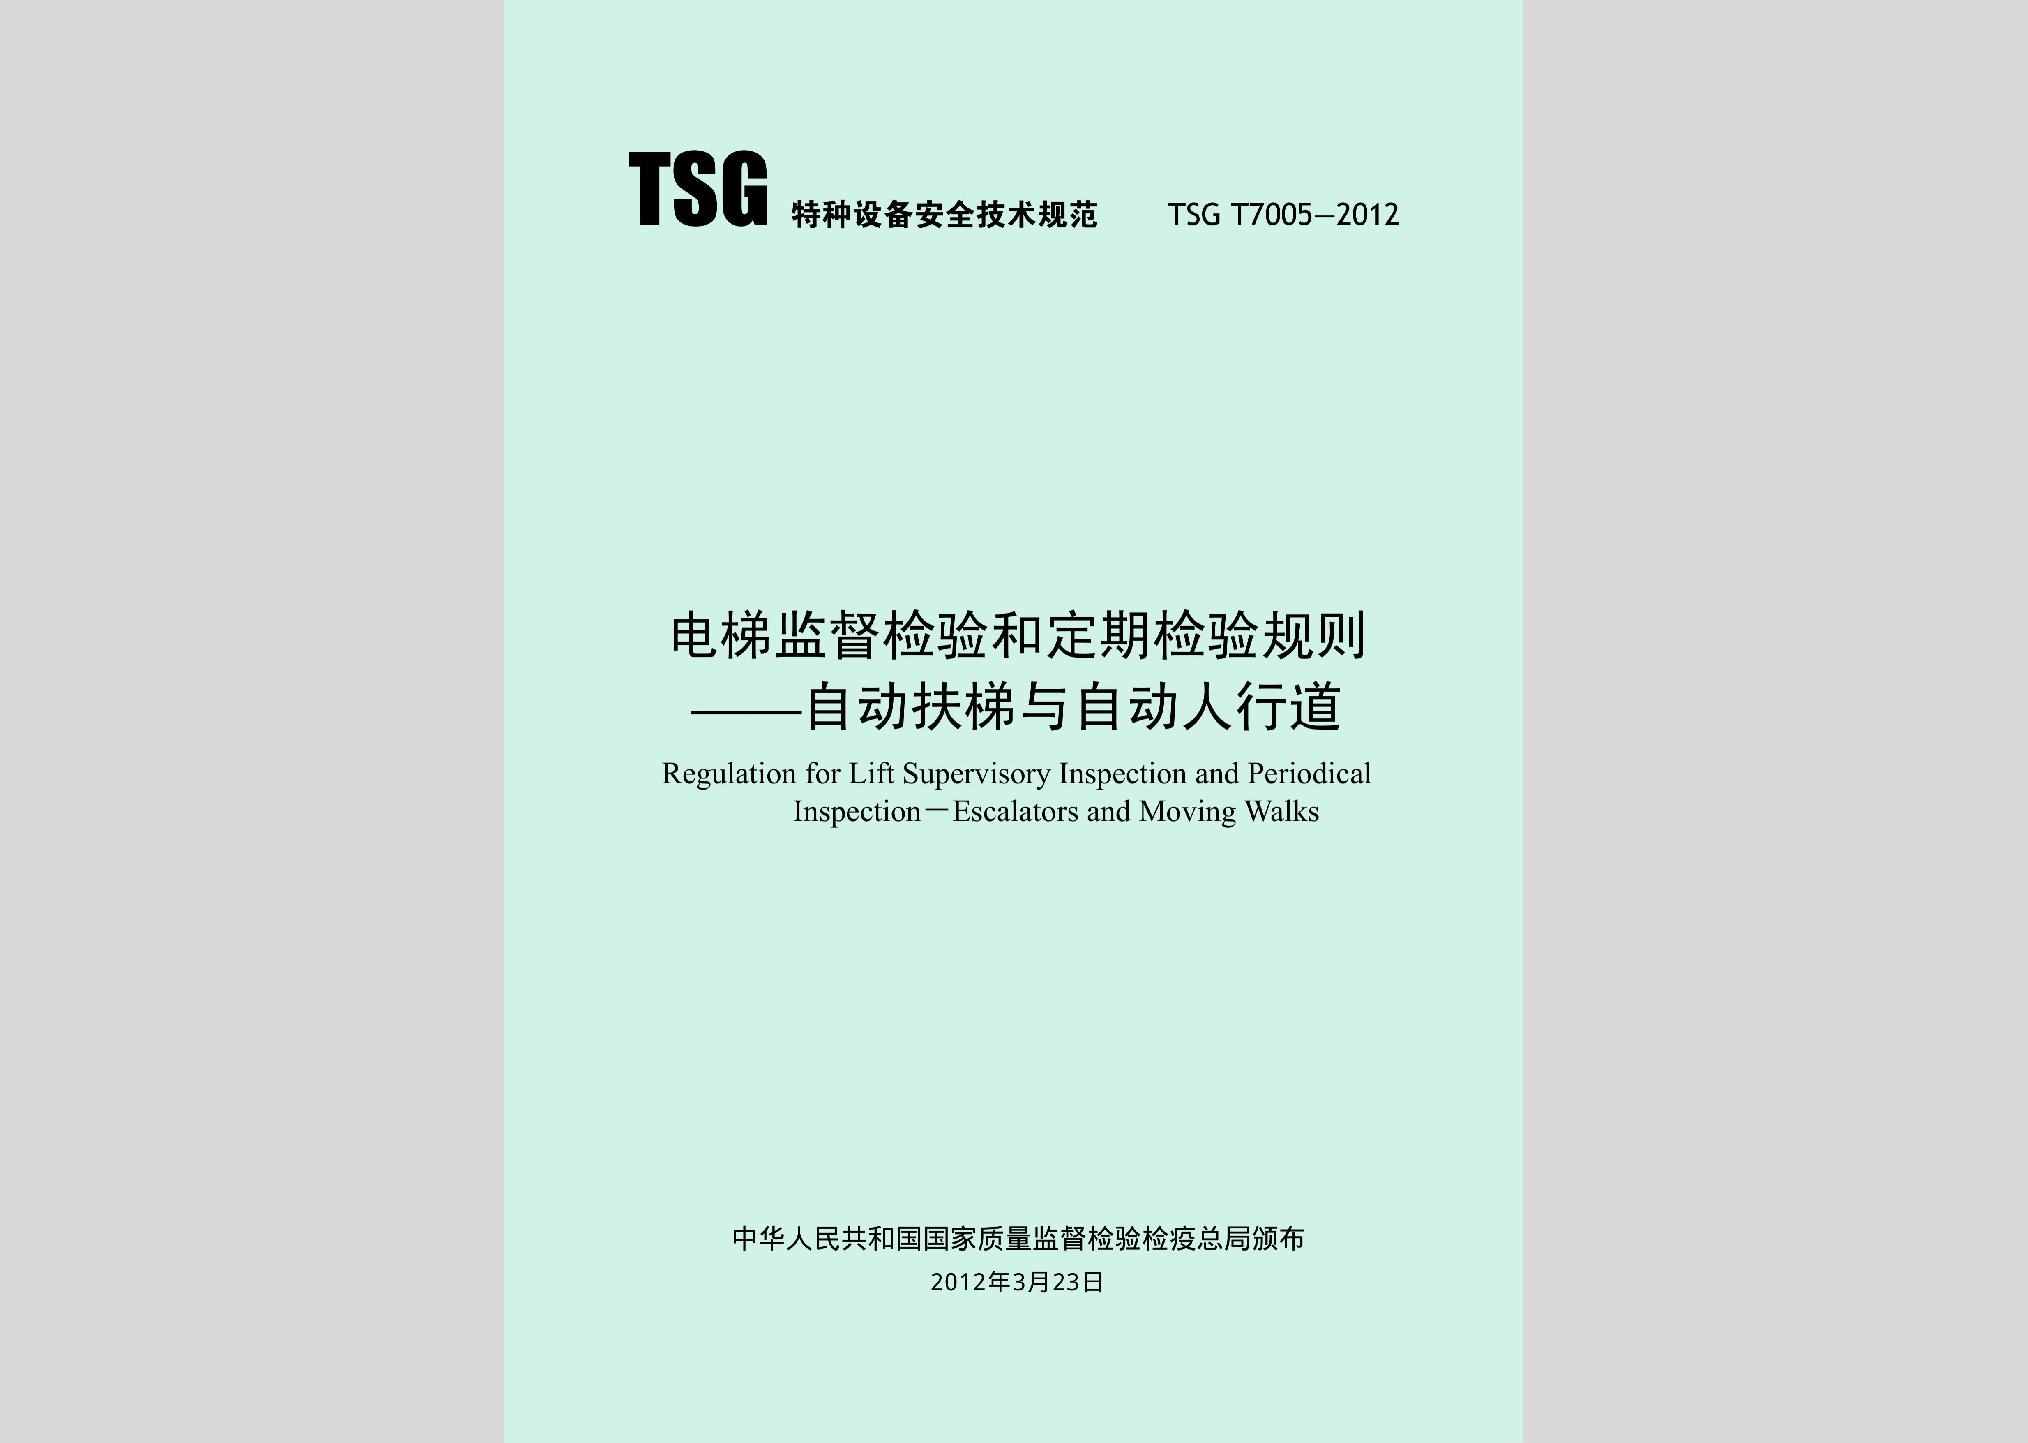 TSGT7005-2012：电梯监督检验和定期检验规则——自动扶梯与自动人行道